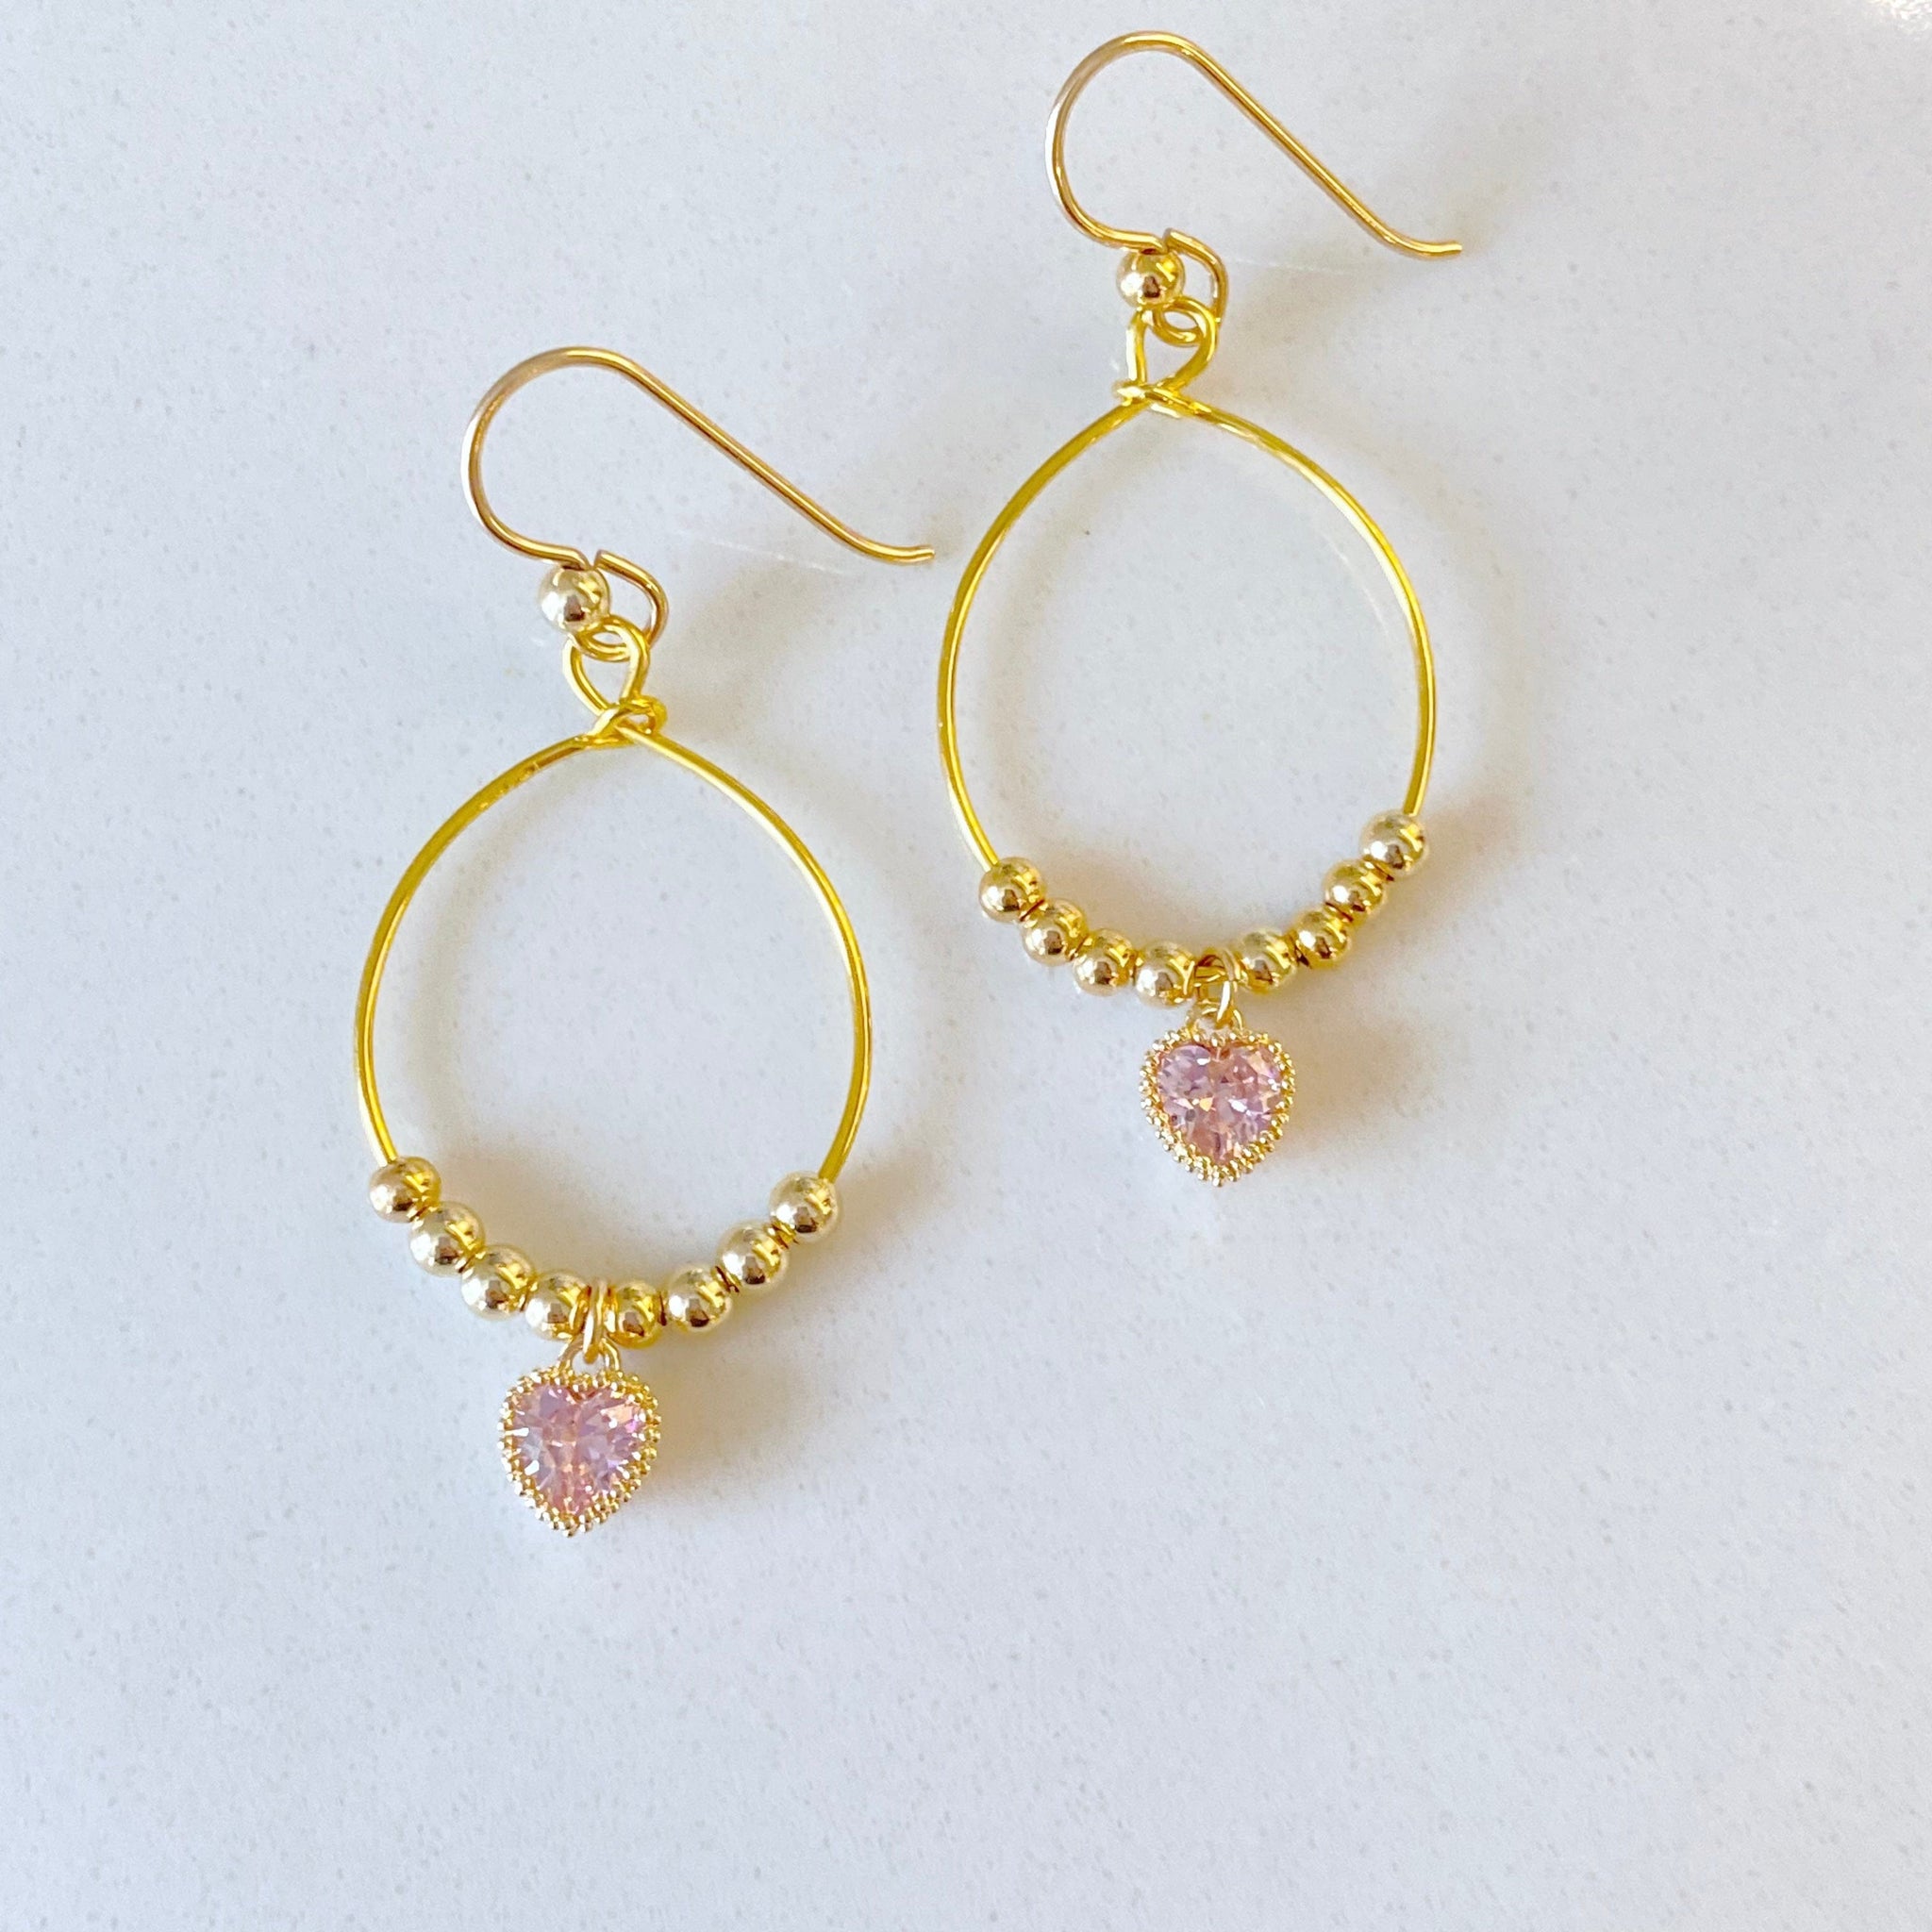 "Coryn" Dangling Heart Earrings in Pink CZ